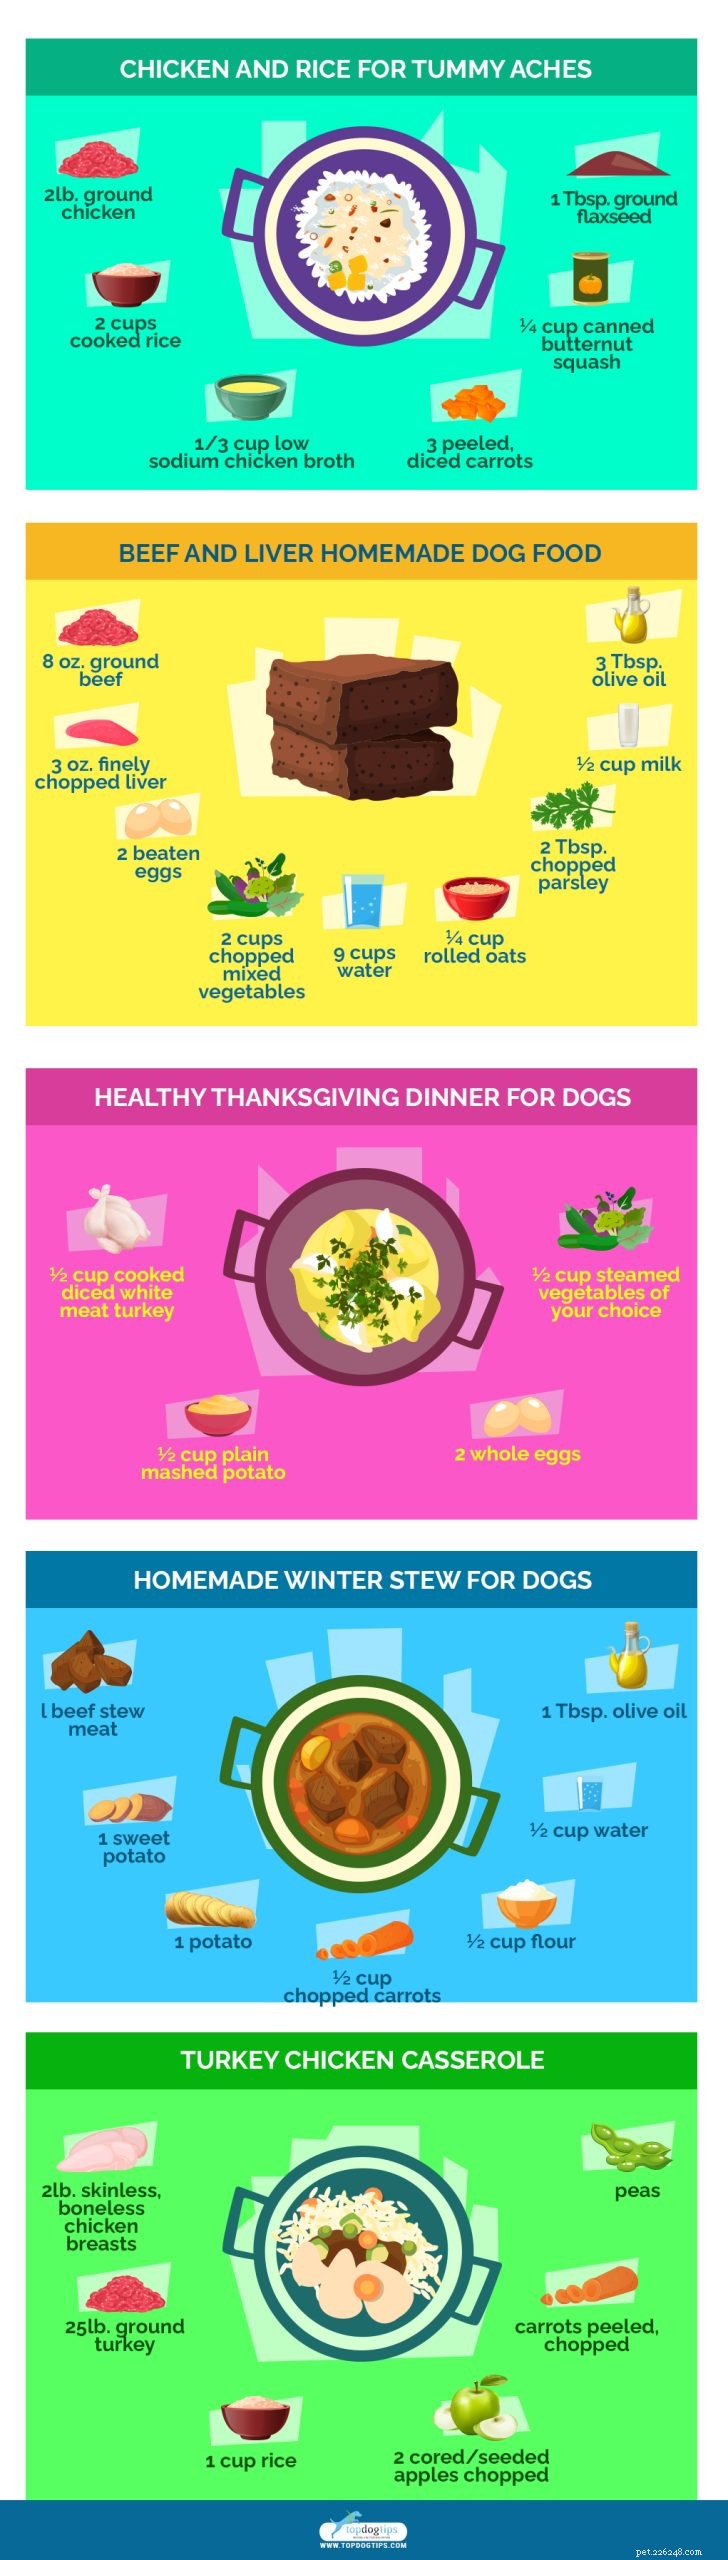 20 receitas caseiras de comida de cachorro mais saudáveis